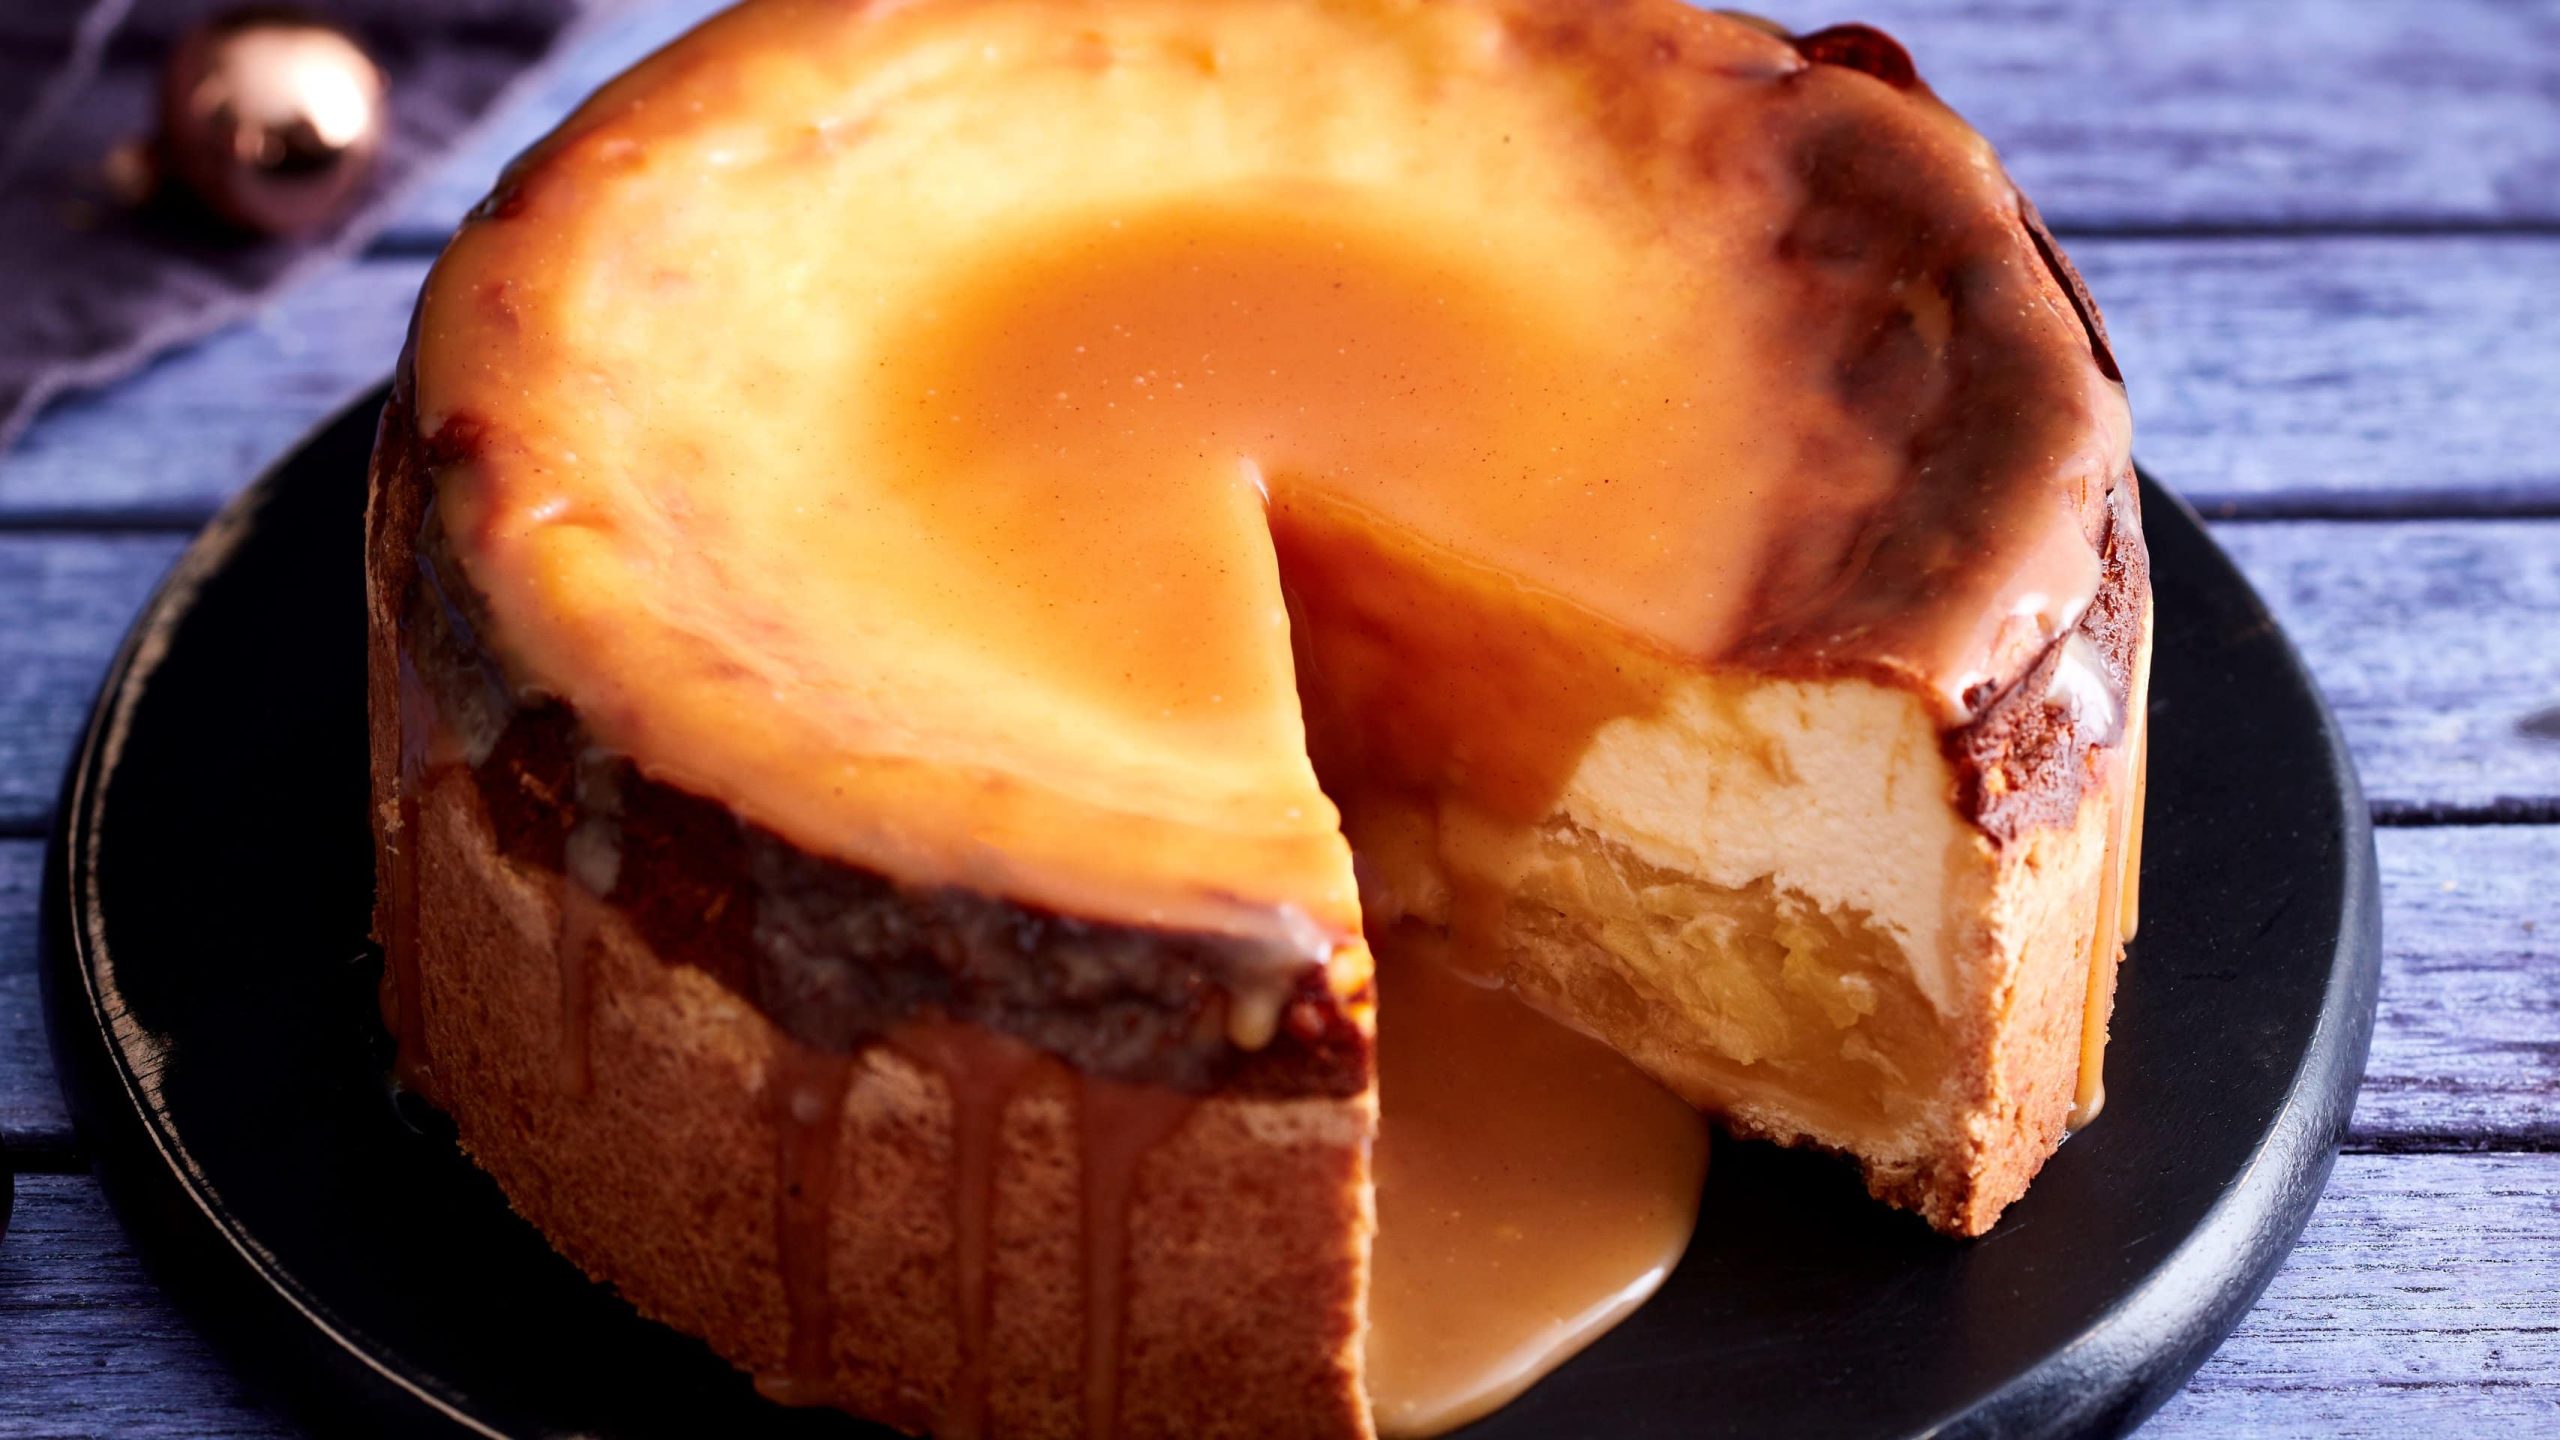 Auf einem Teller steht ein Käsekuchen mit Apfelkompott und Lebkuchenkaramell. Er ist angeschnitten und man erkennt die Füllung.